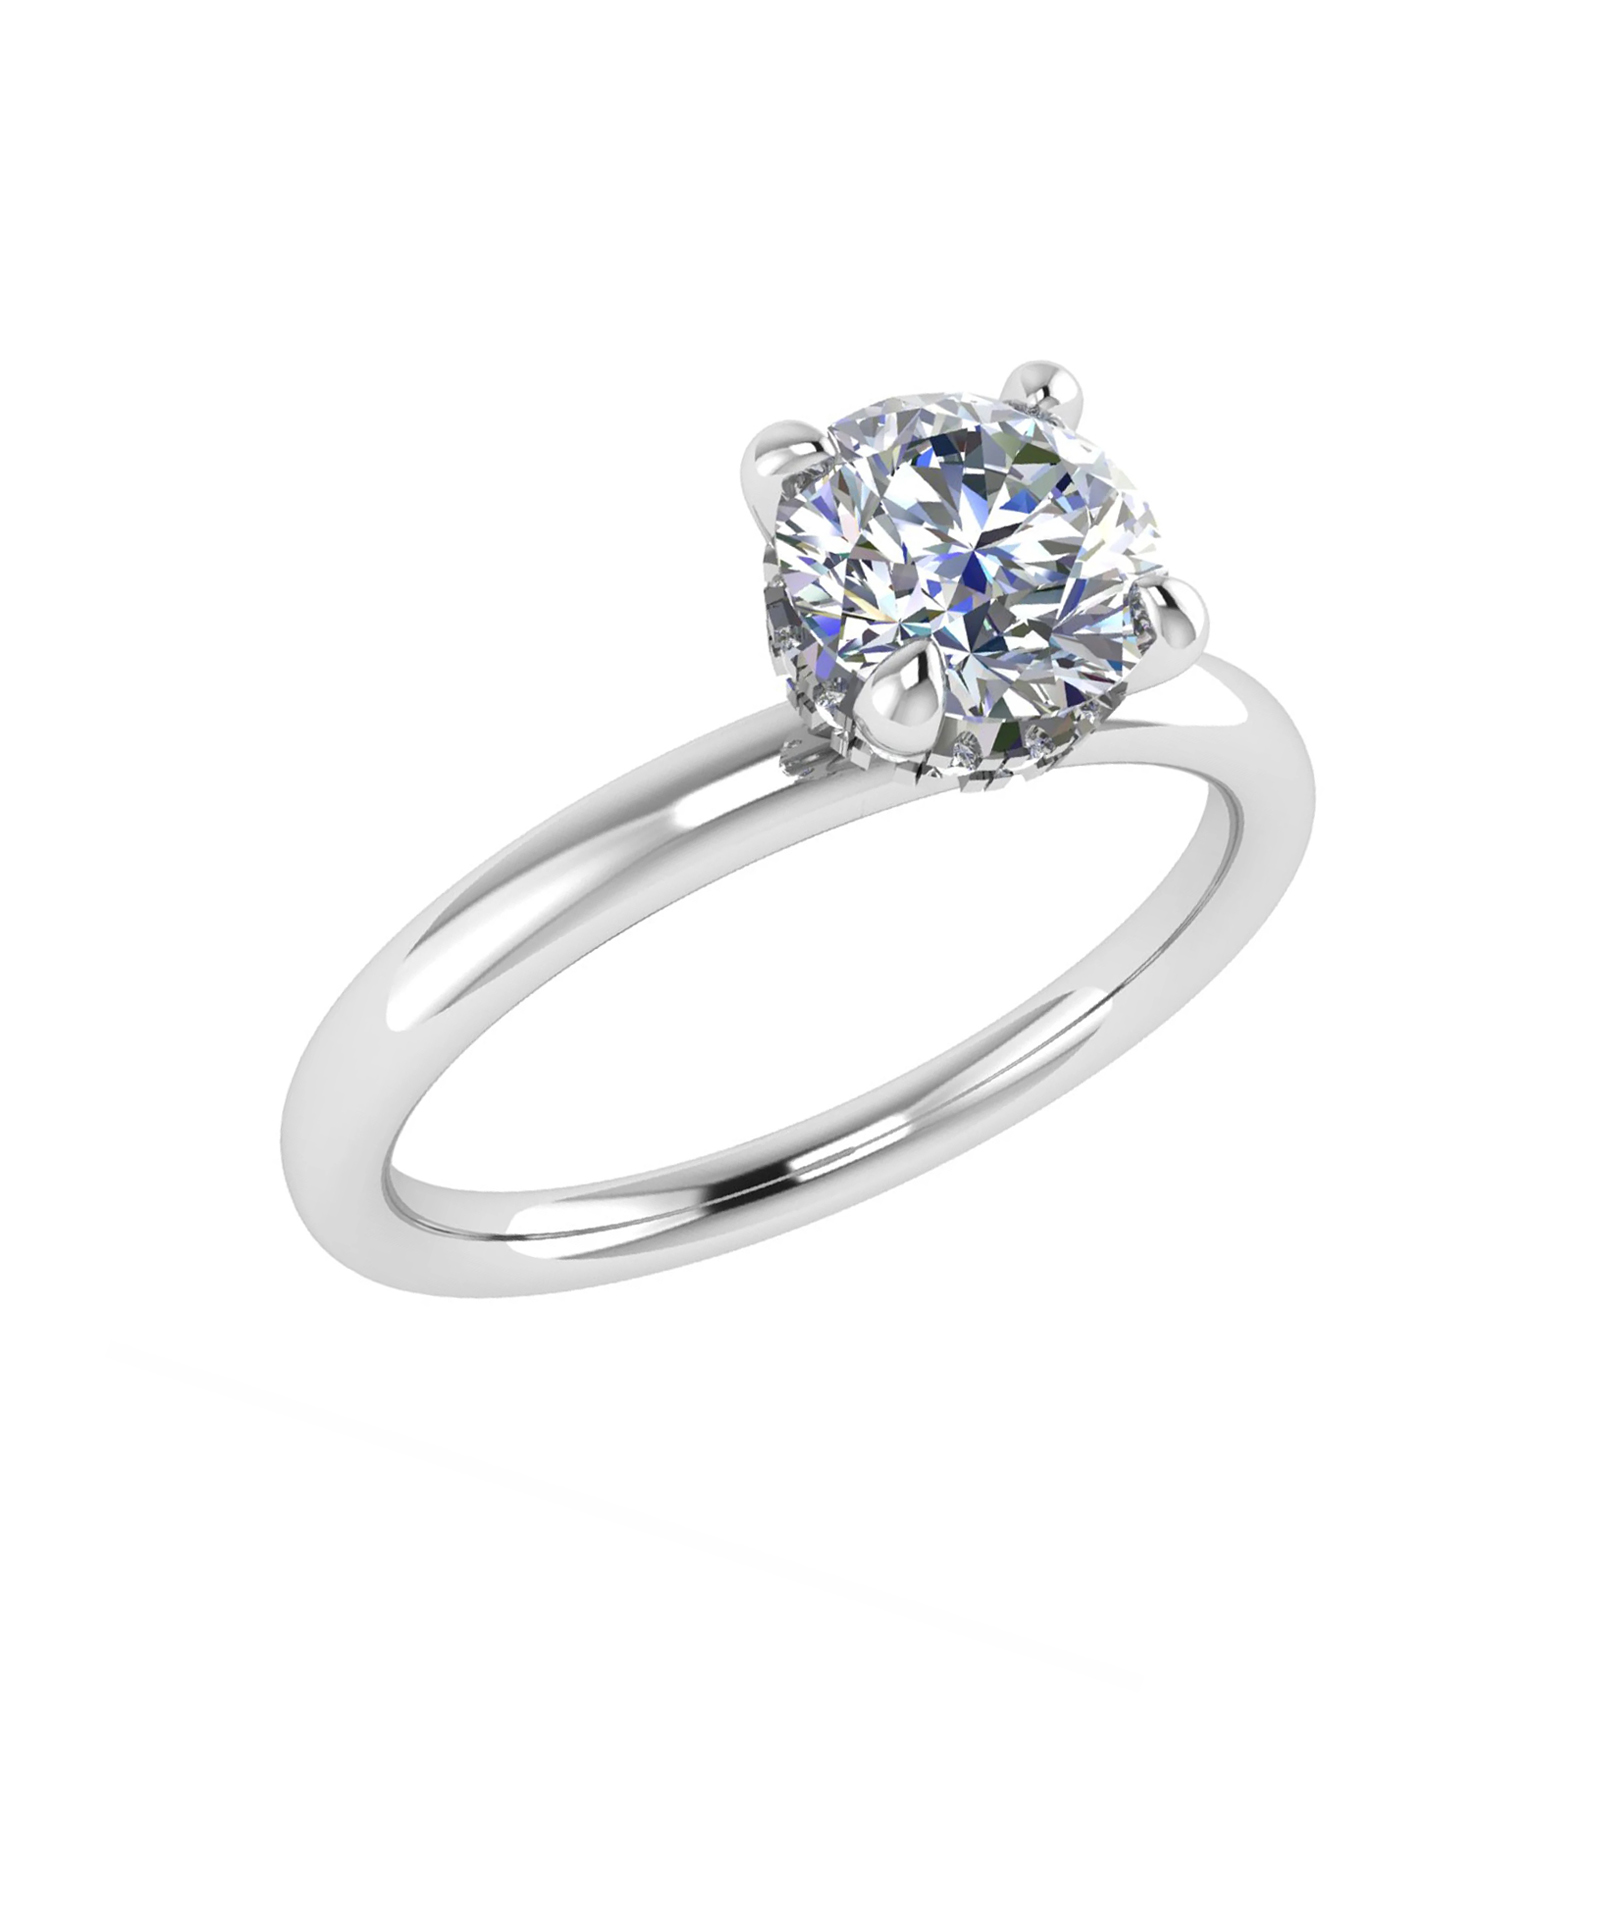 Round Brilliant Cut Lab Grown Diamond Platinum Engagement Ring